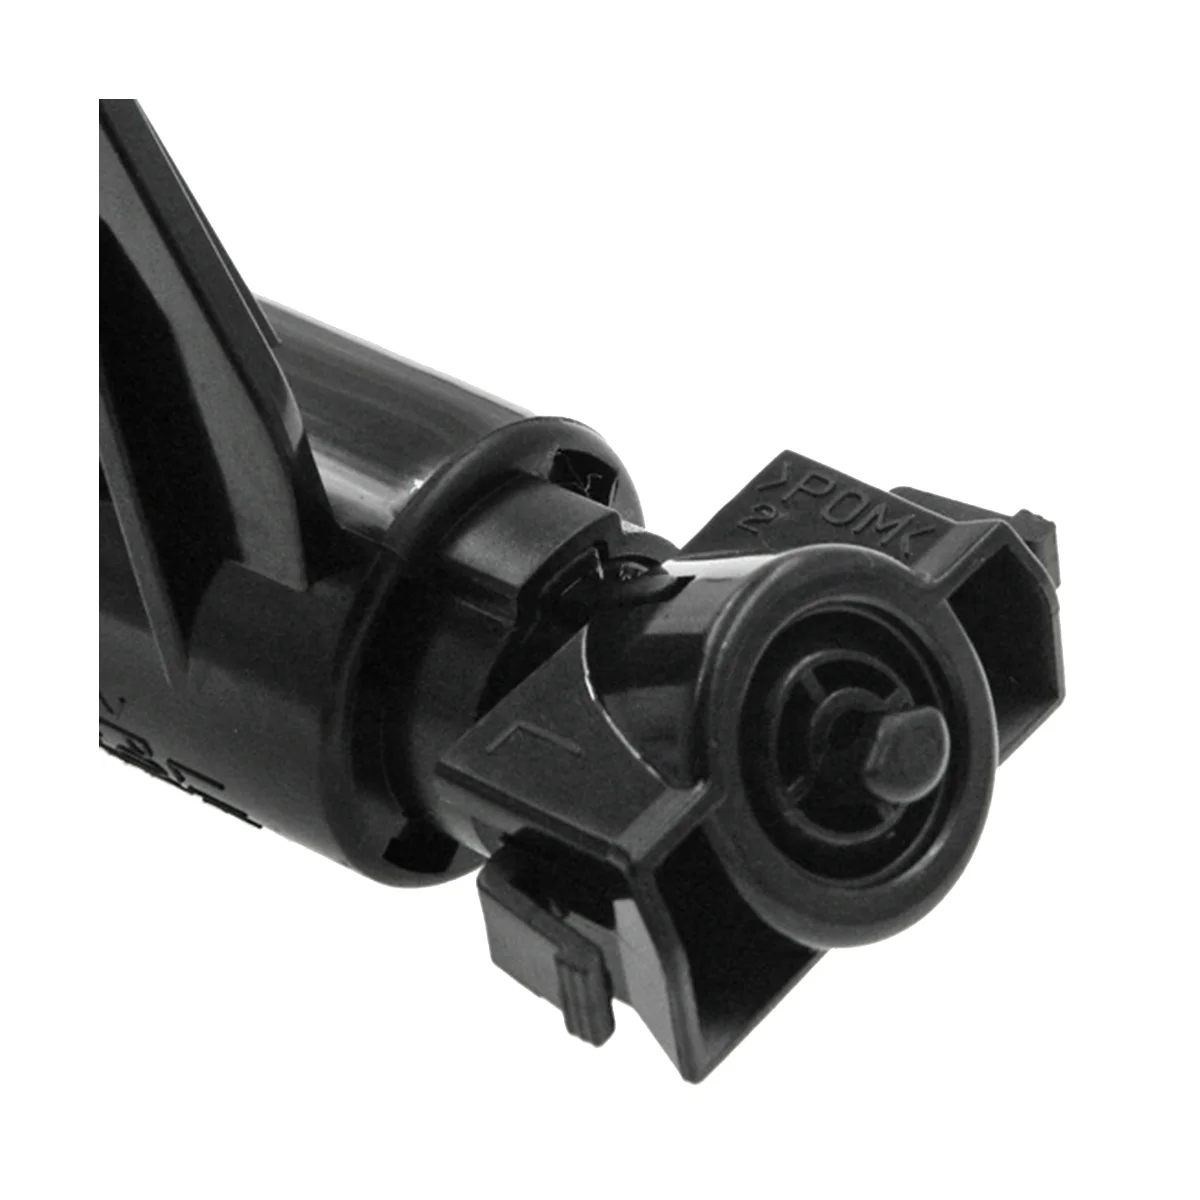 

98672-F1000 Right Front Headlight Washer Nozzle for KIA Sportage KX5 2016-2018 Car Water Spray Jet Telescopic Nozzle